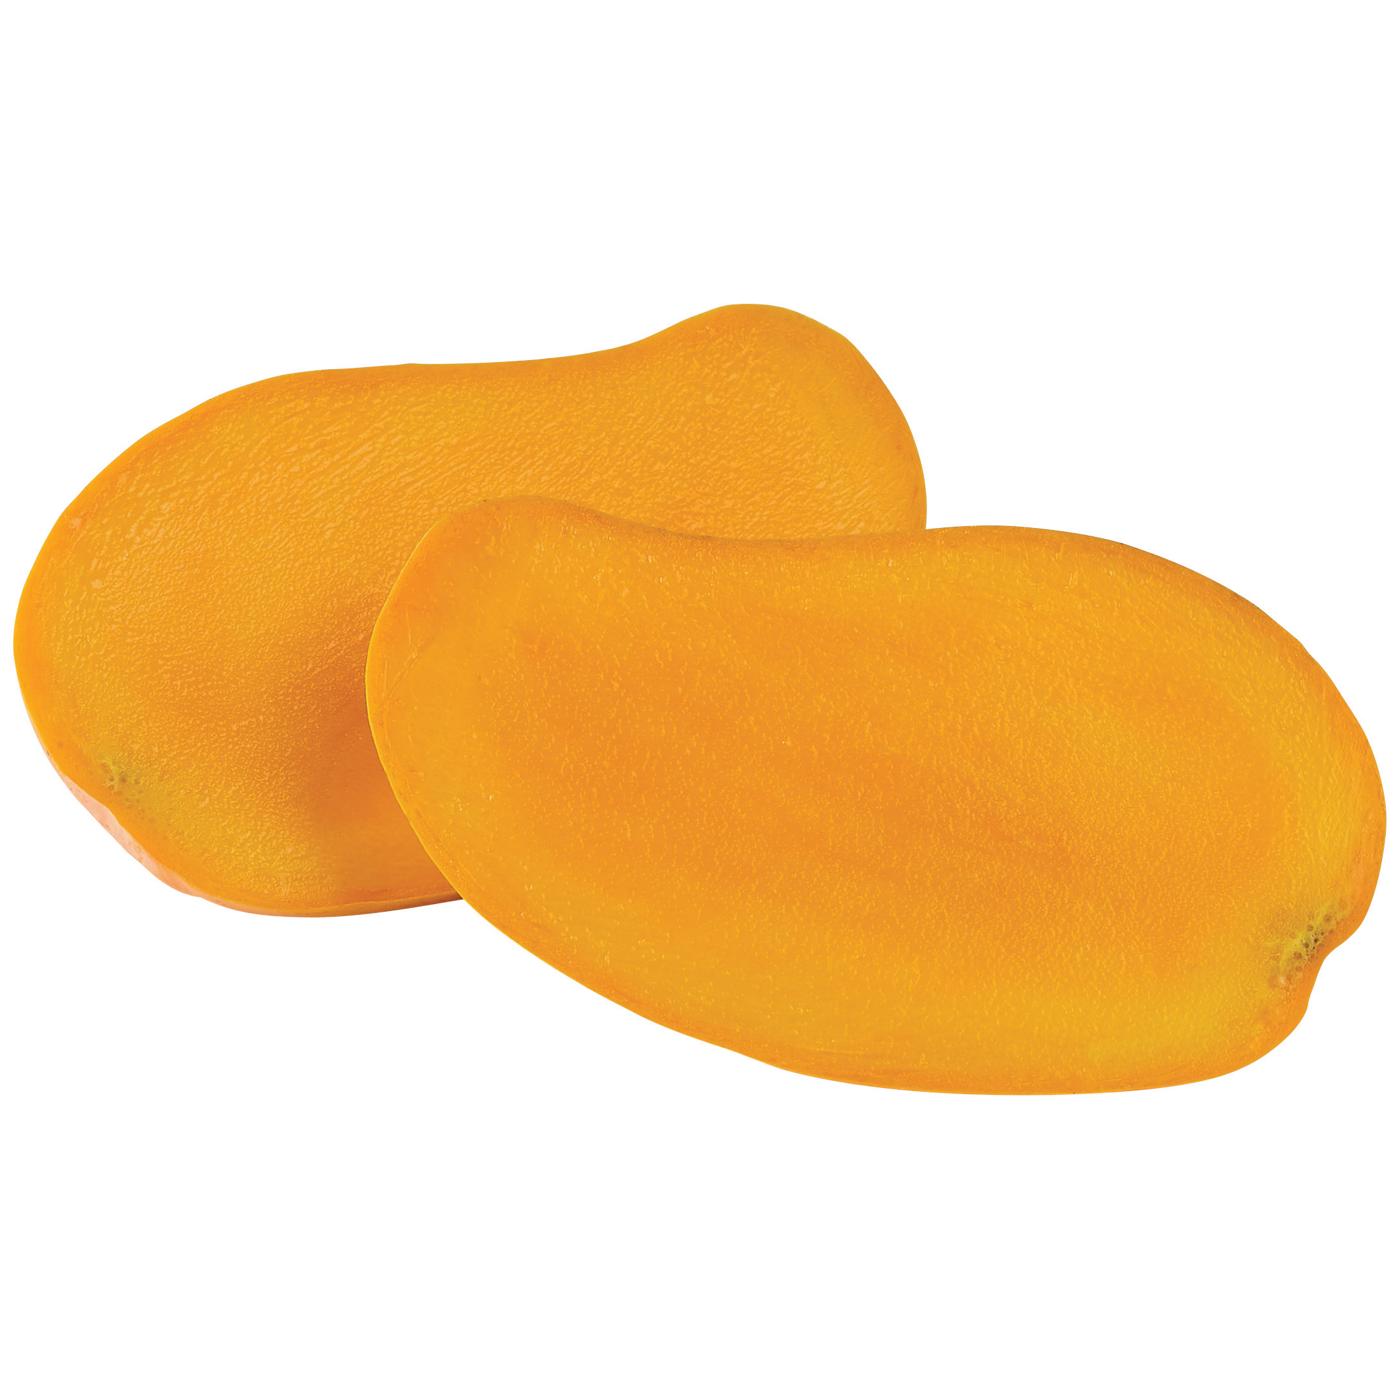 Fresh Large Ataulfo Mango; image 2 of 4